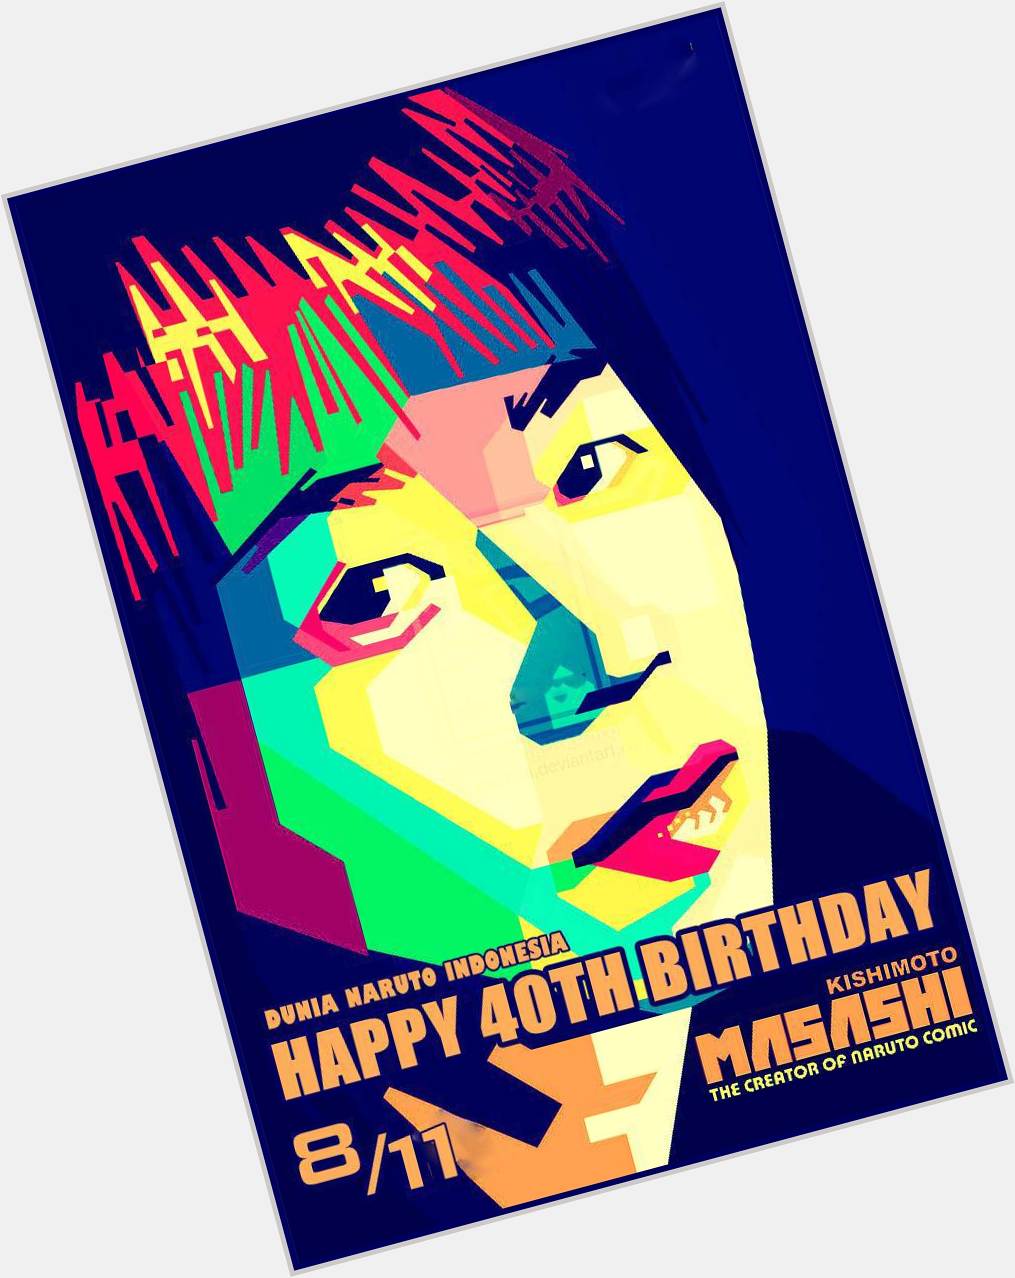 " Happy 40th Birthday, Masashi Kishimoto!  